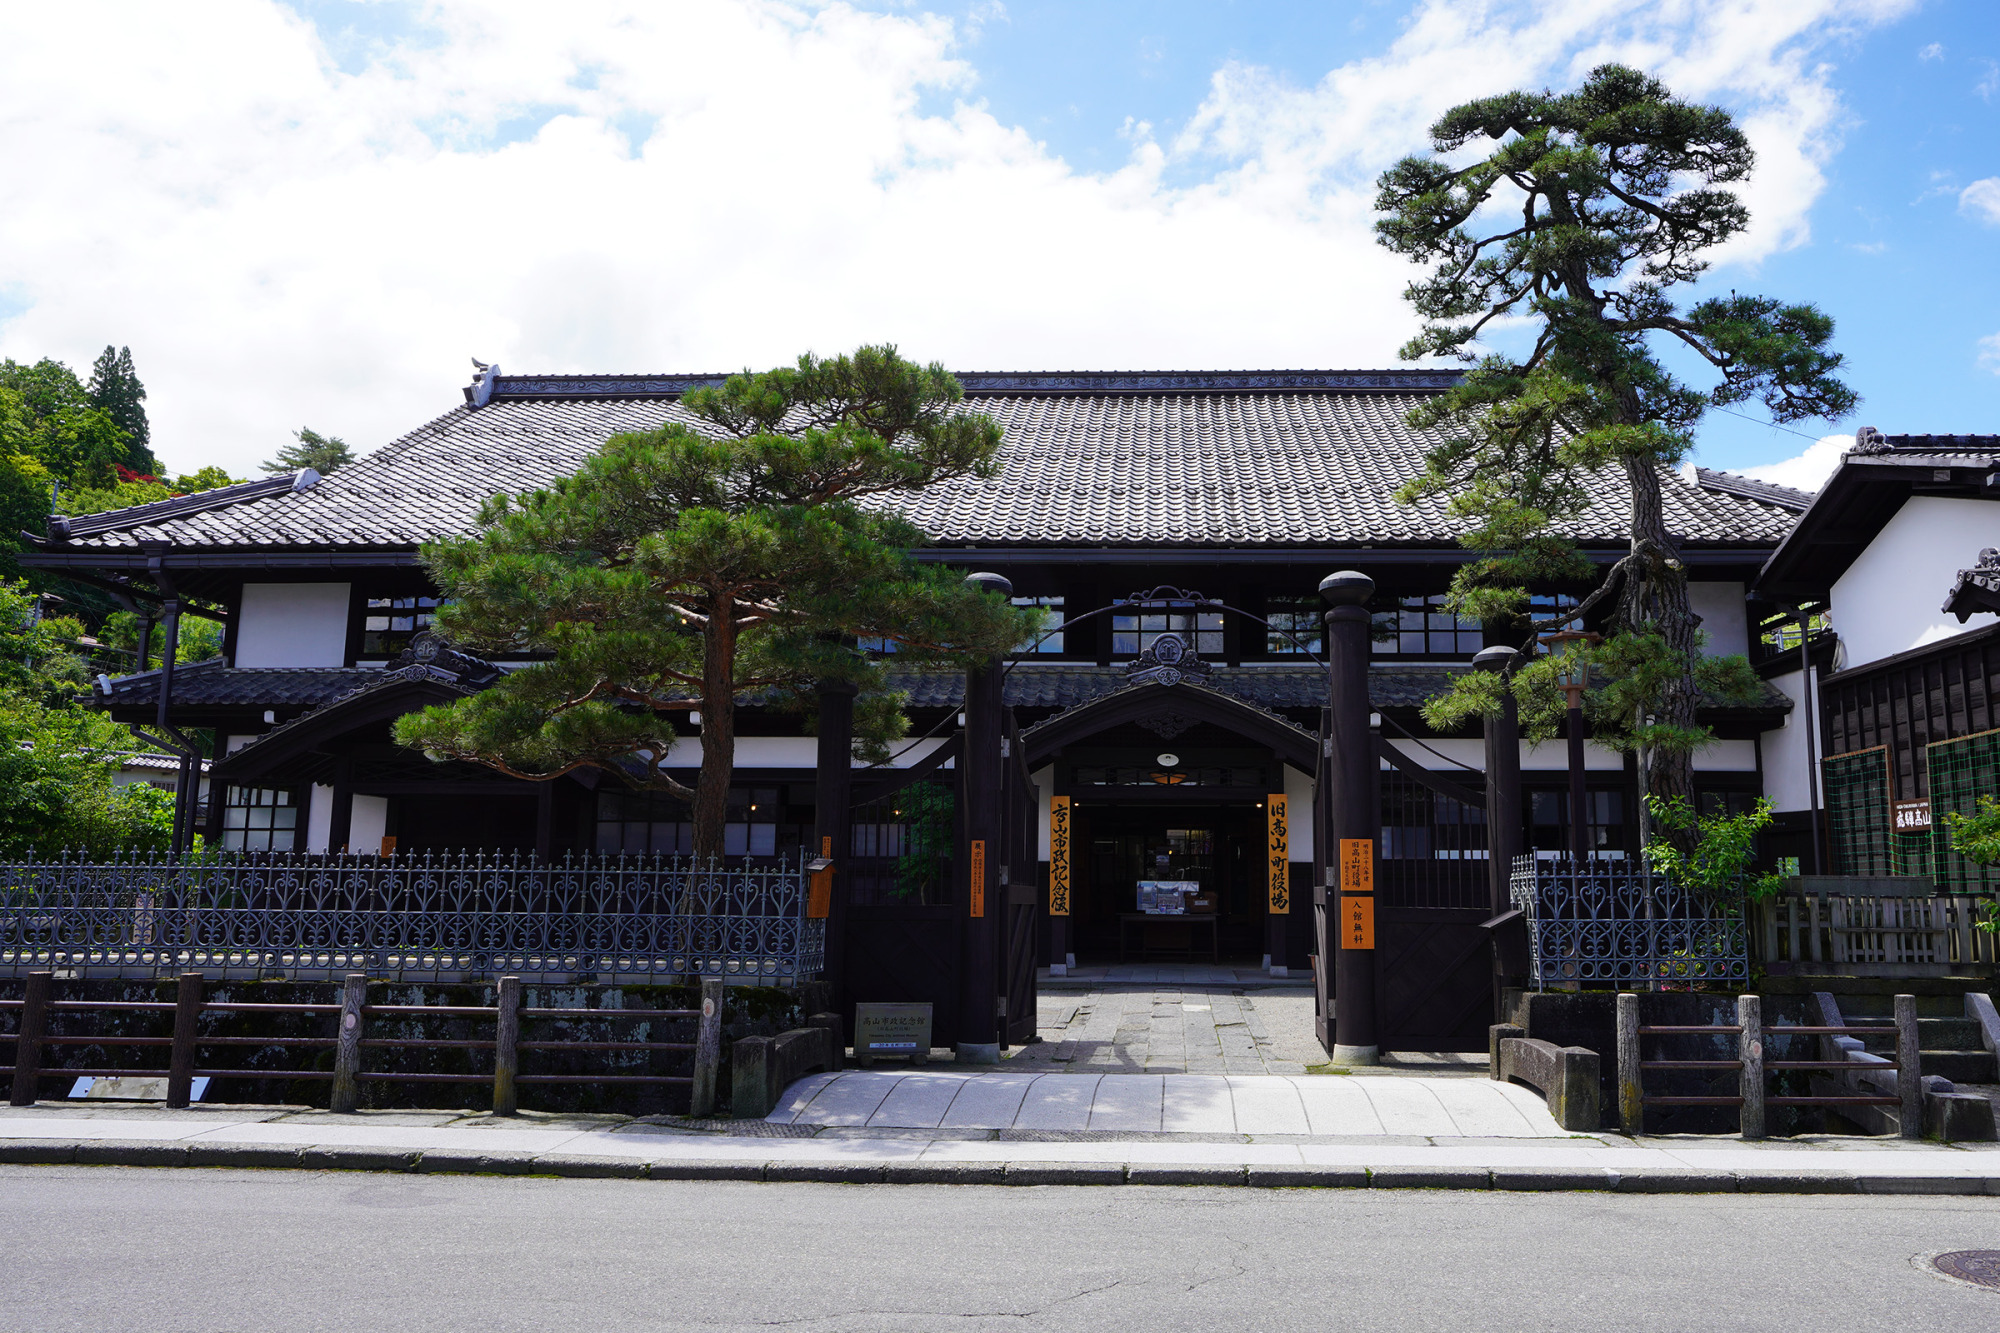 明治28年から昭和43年まで町役場・市役所として使用された高山市政記念館